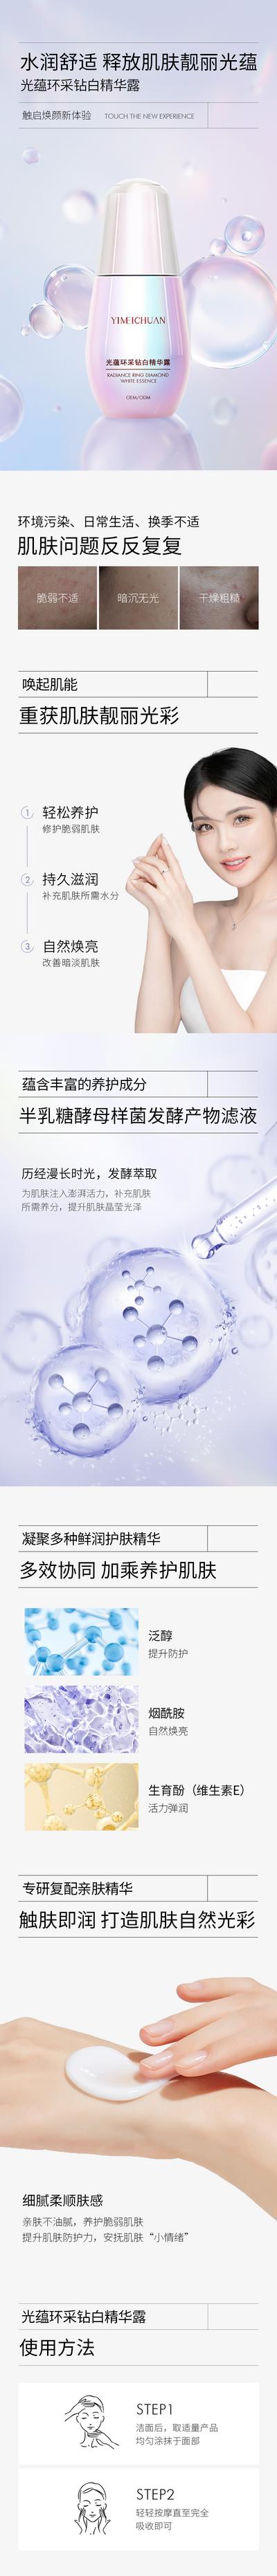 南门网 广告 海报 电商 精华 化妆品 保养品 详情页 水润